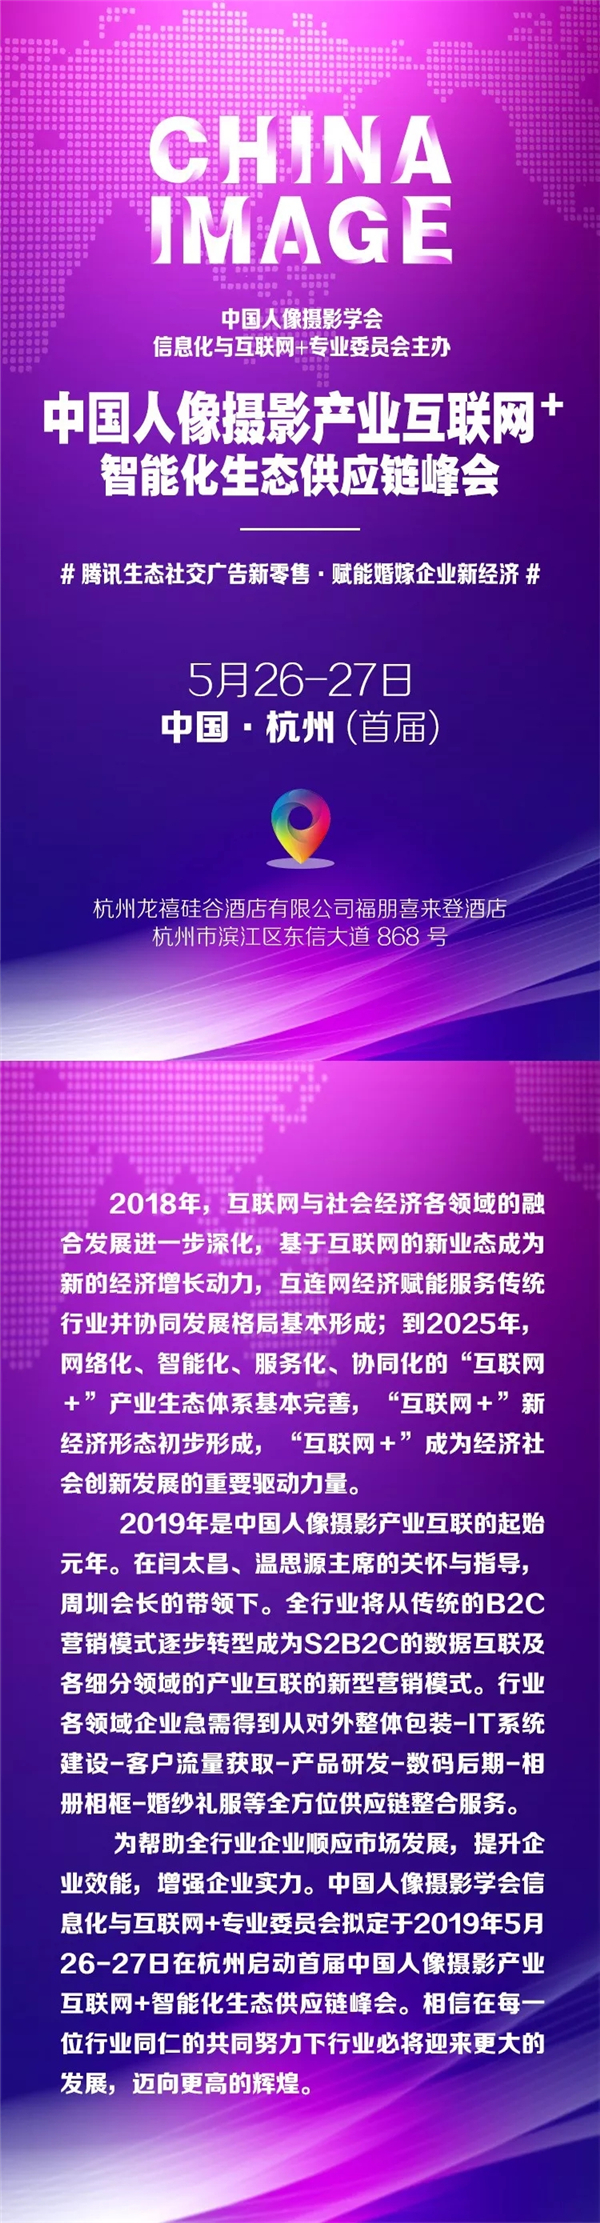 5.26-27 中国人像摄影产业互联网+智能化生态供应链峰会